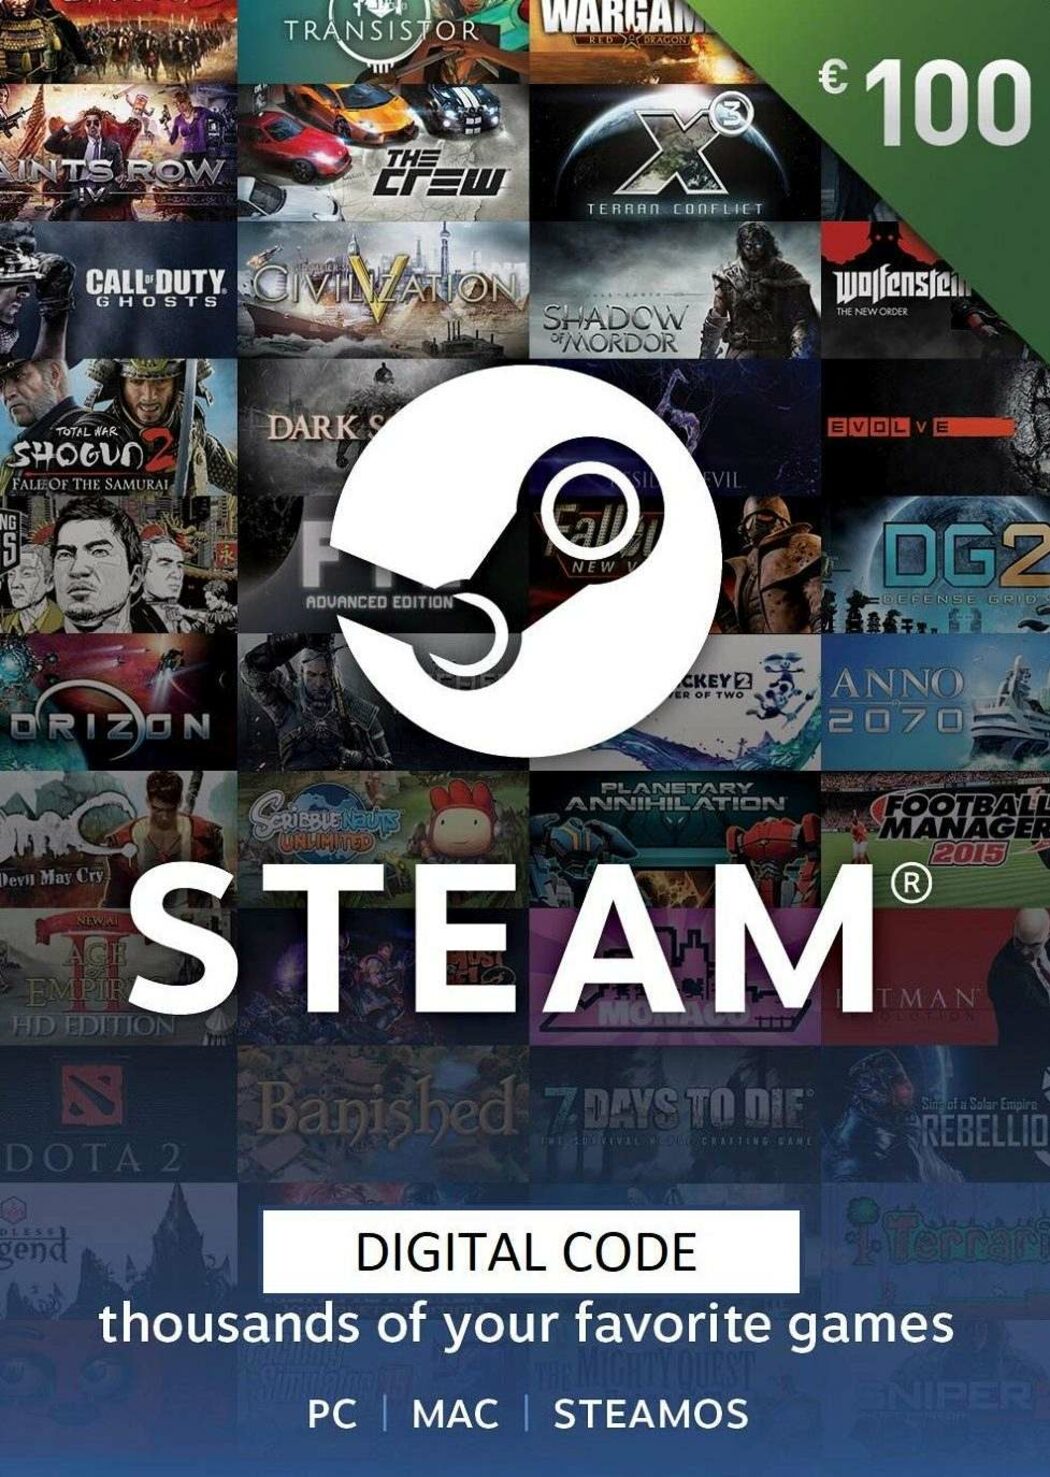 steam wallet online store